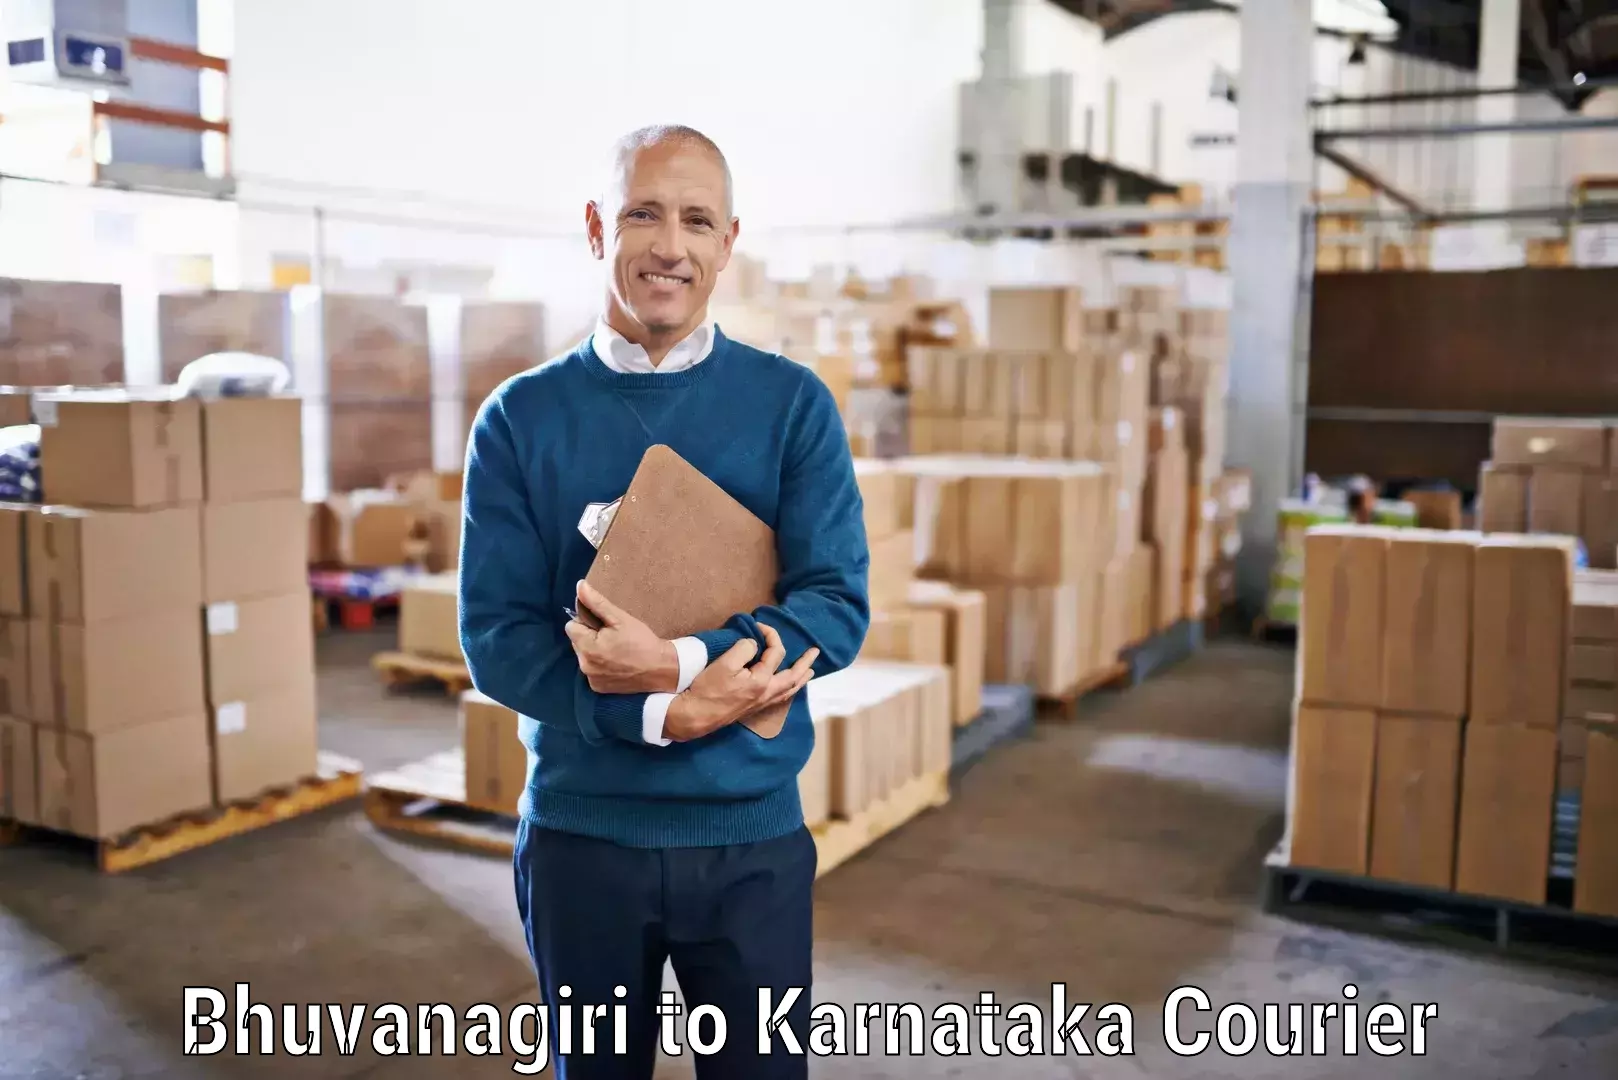 Nationwide courier service Bhuvanagiri to Davangere